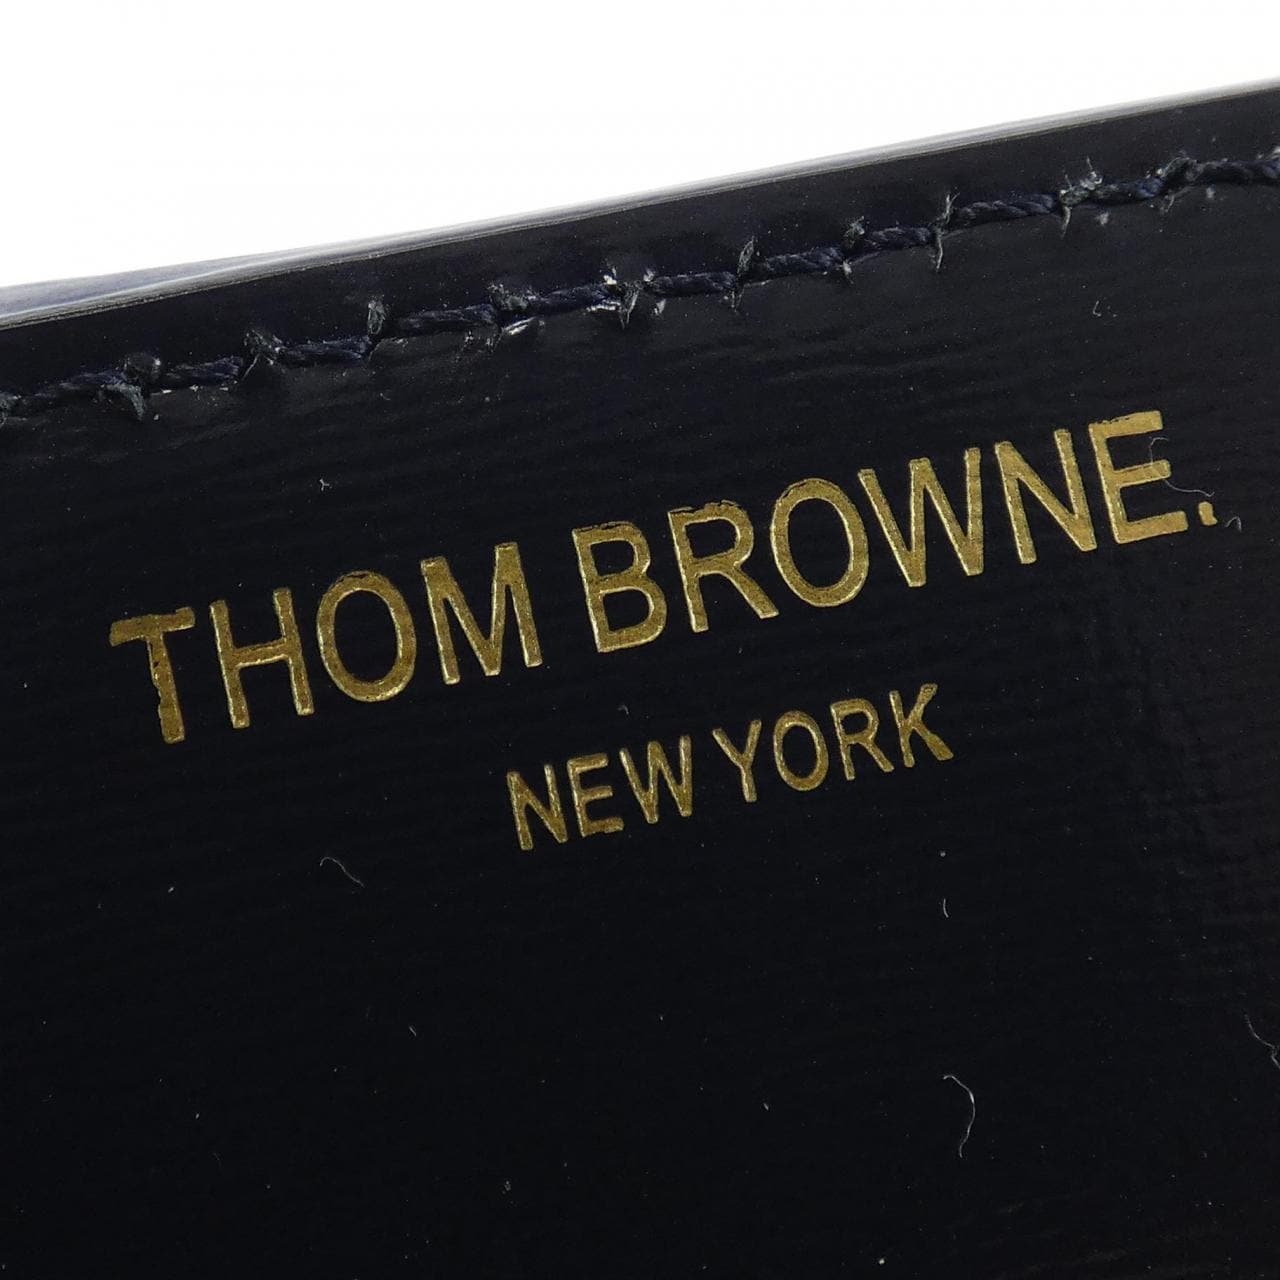 THOM BROWNE湯姆·布朗包